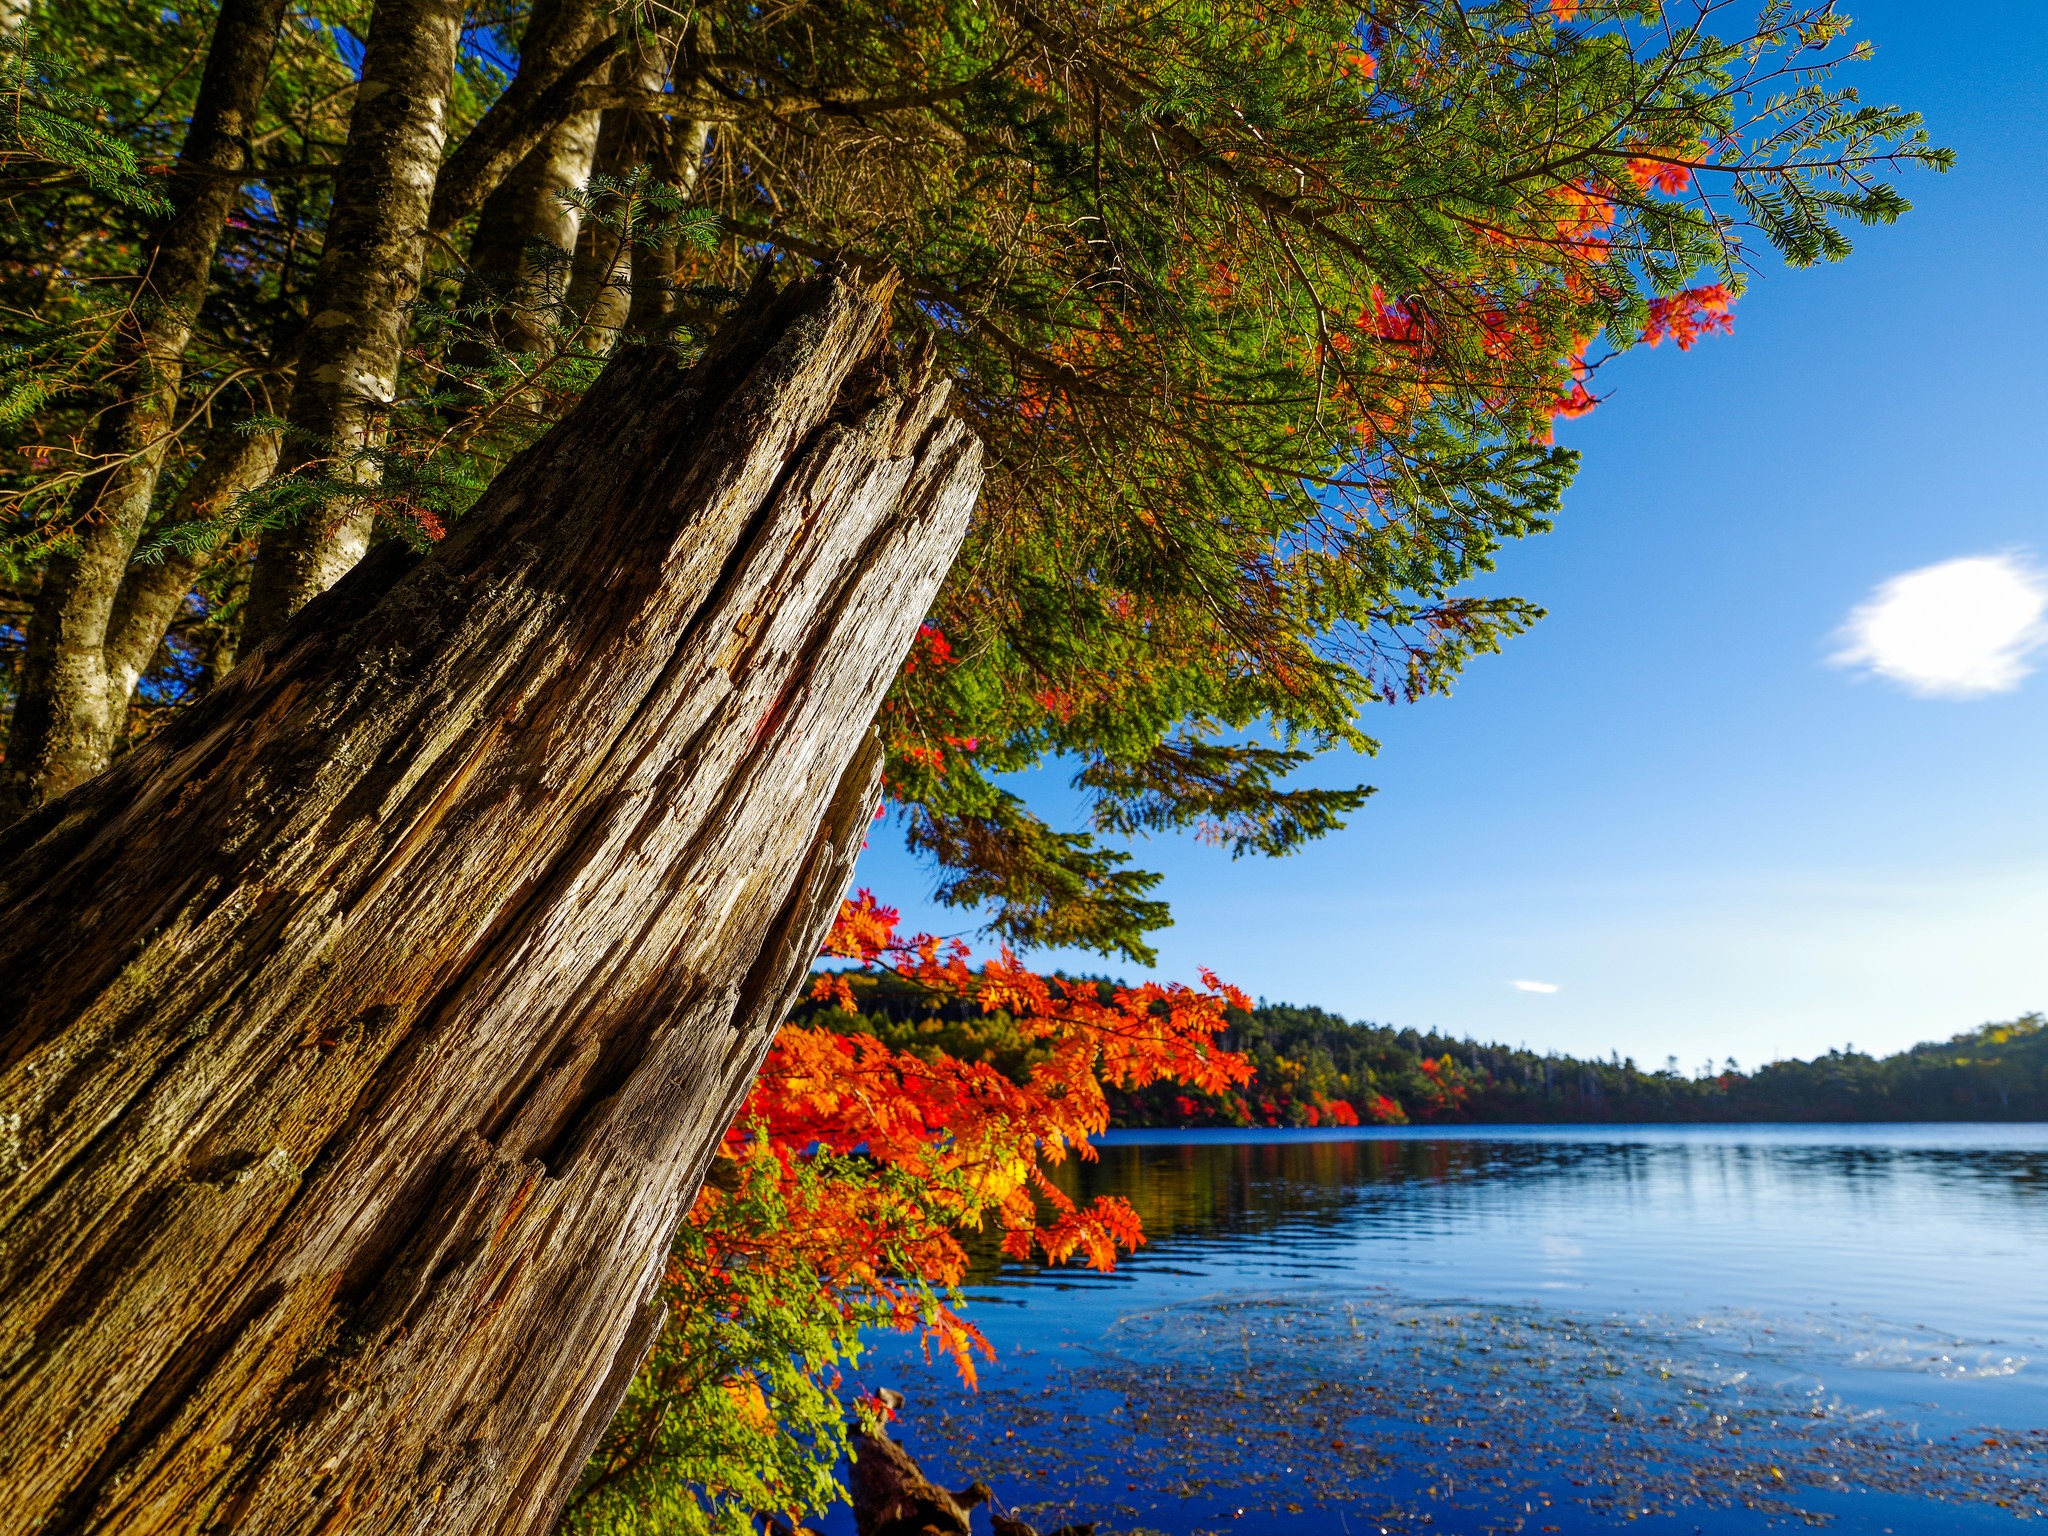 Заставка на телефон вертикальная природа. Заставки на телефон природа. Осень озеро деревья. Обои вертикальные природа. Природа вертикальное фото.